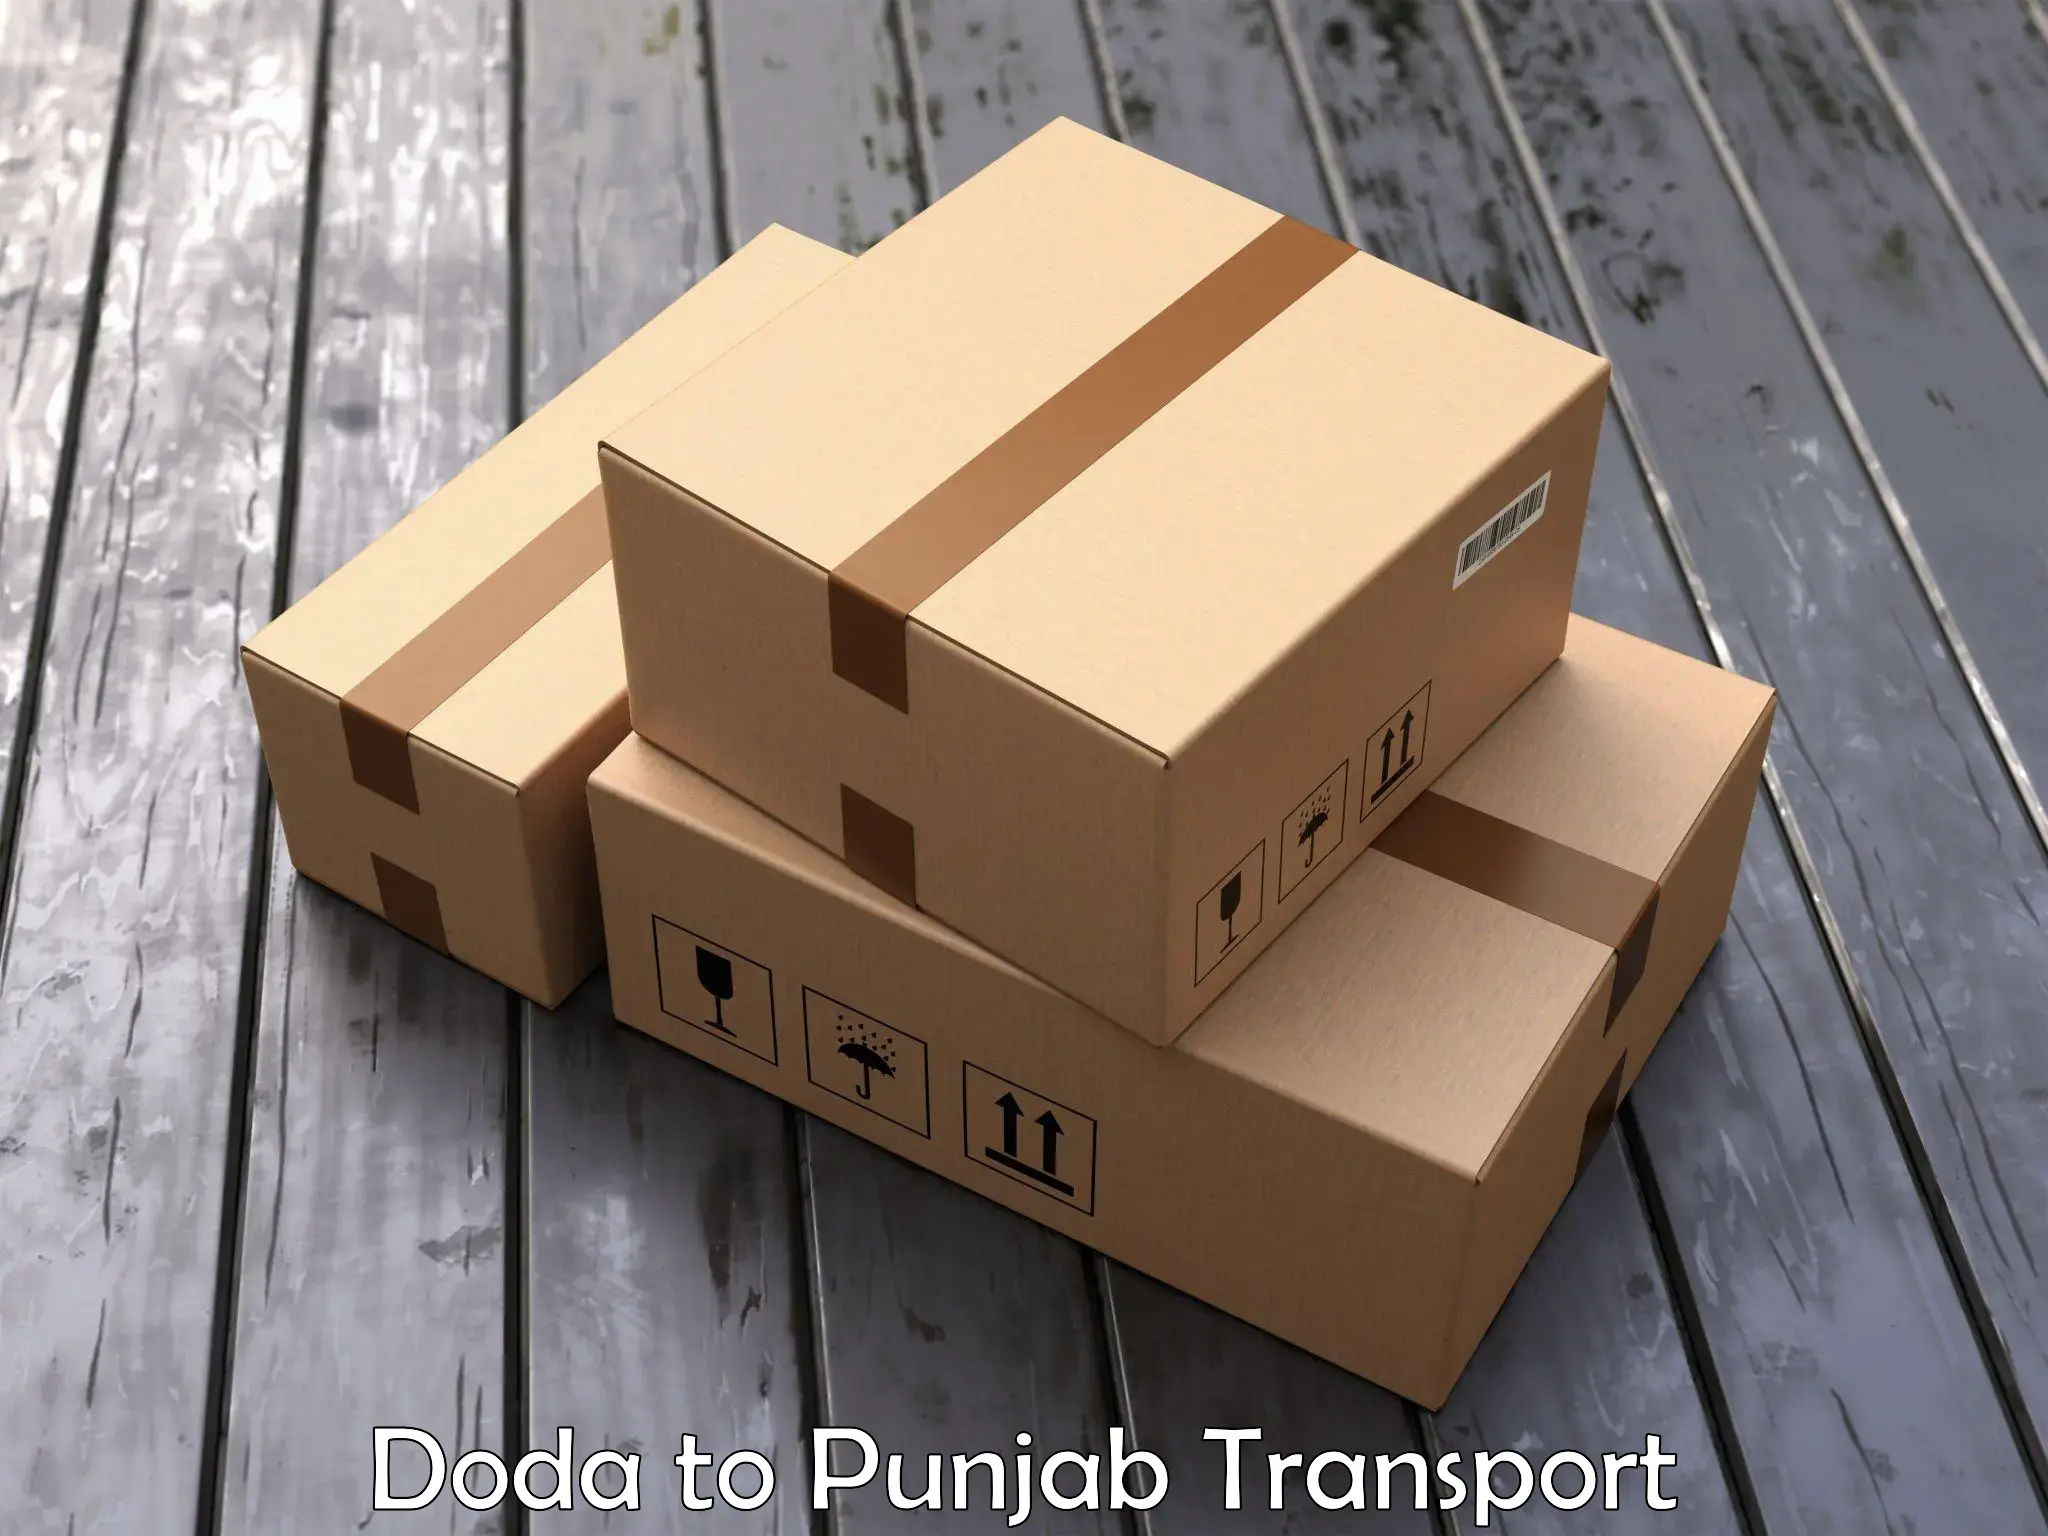 Delivery service Doda to Jalandhar